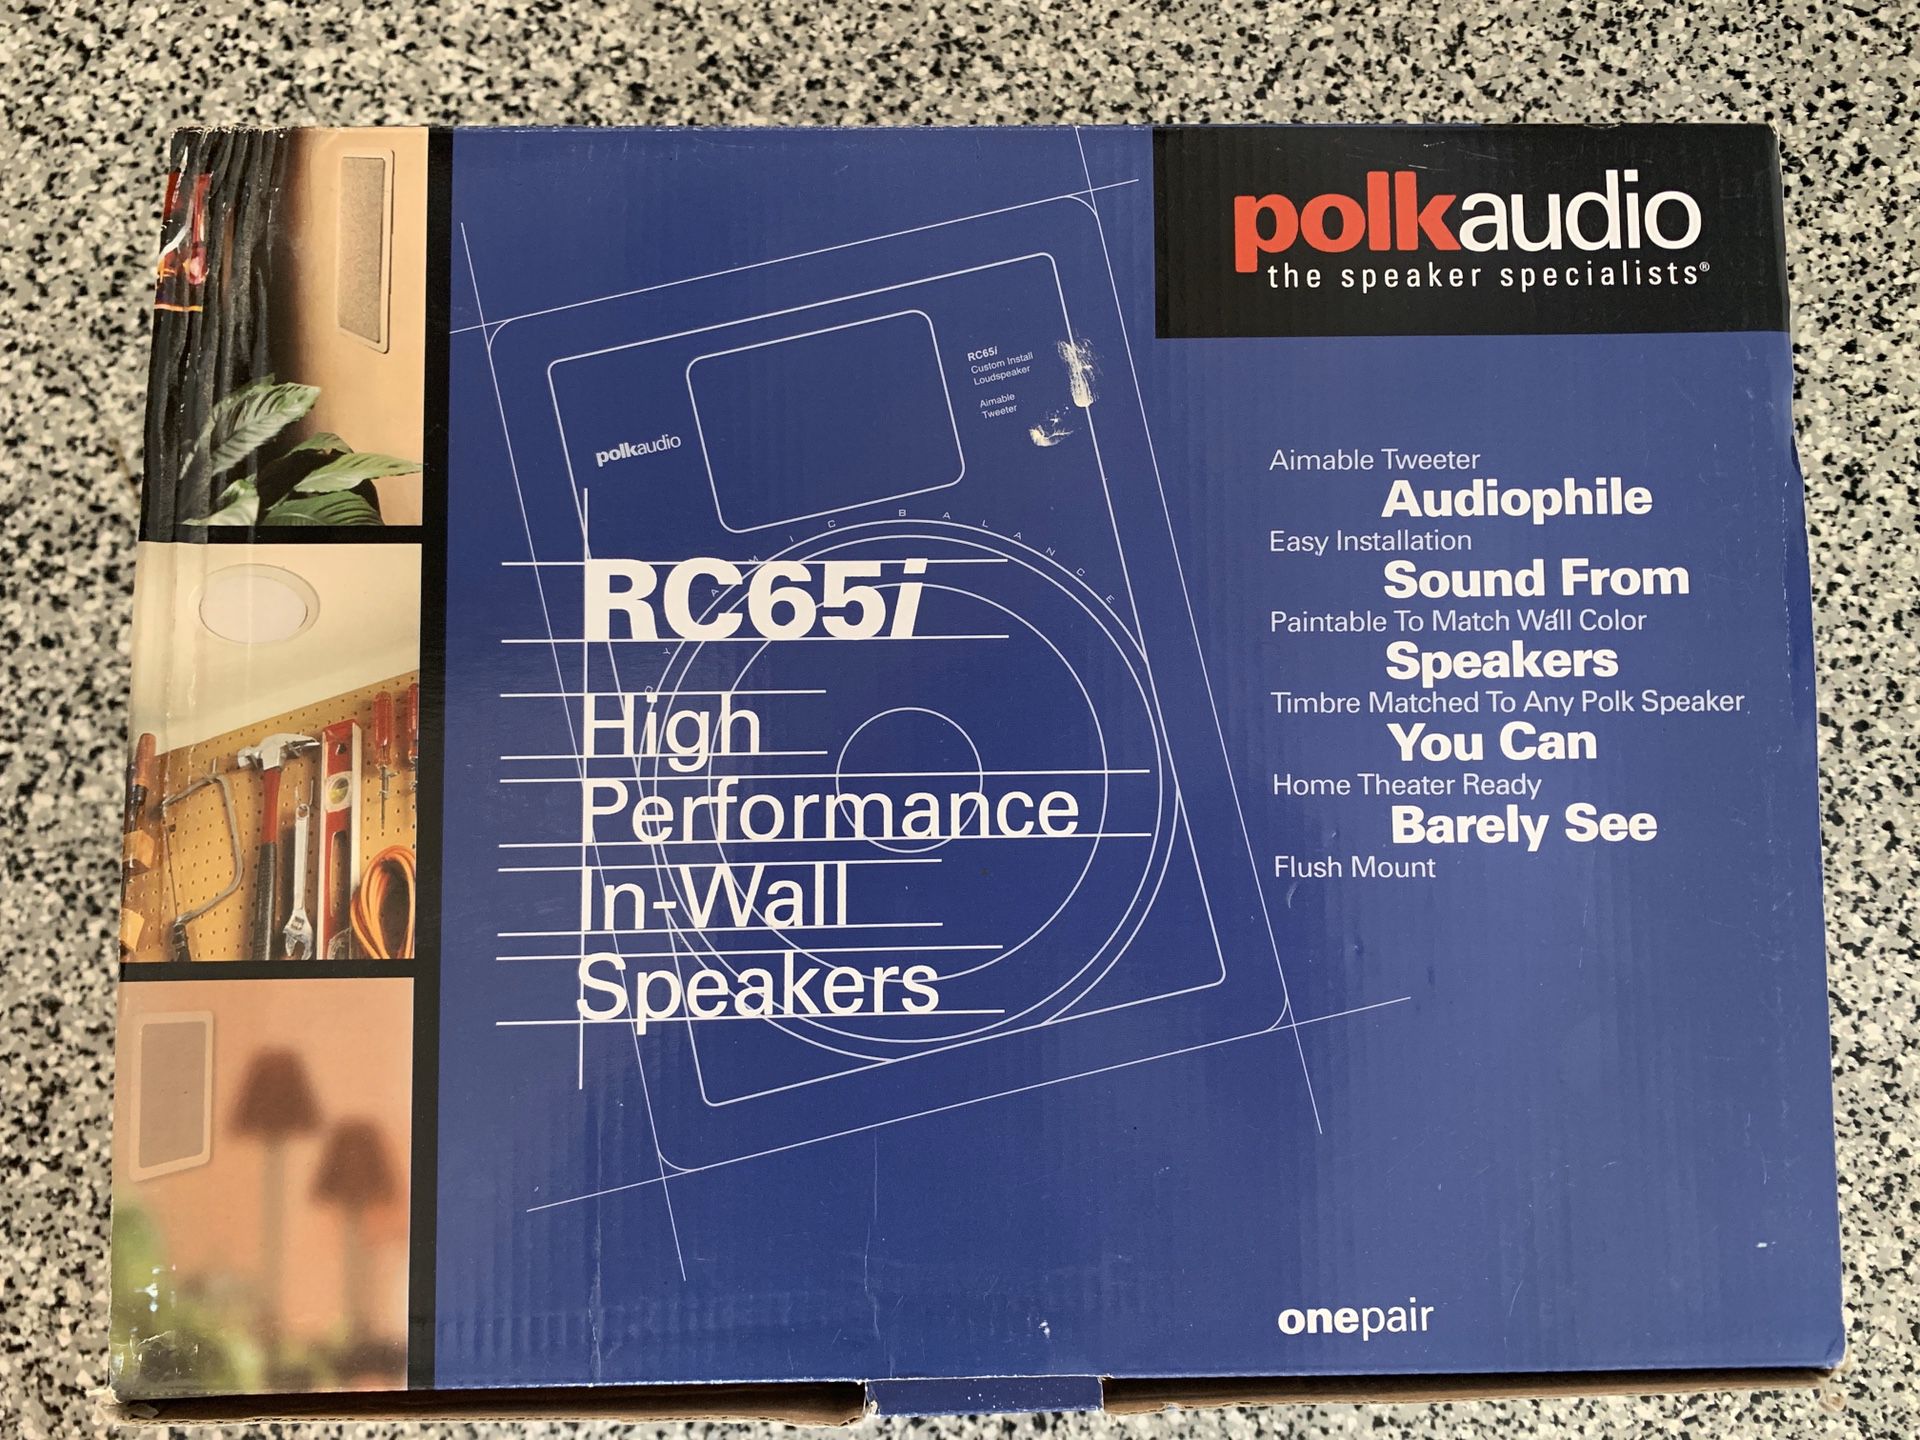 One pair Polk Audio in-wall speakers